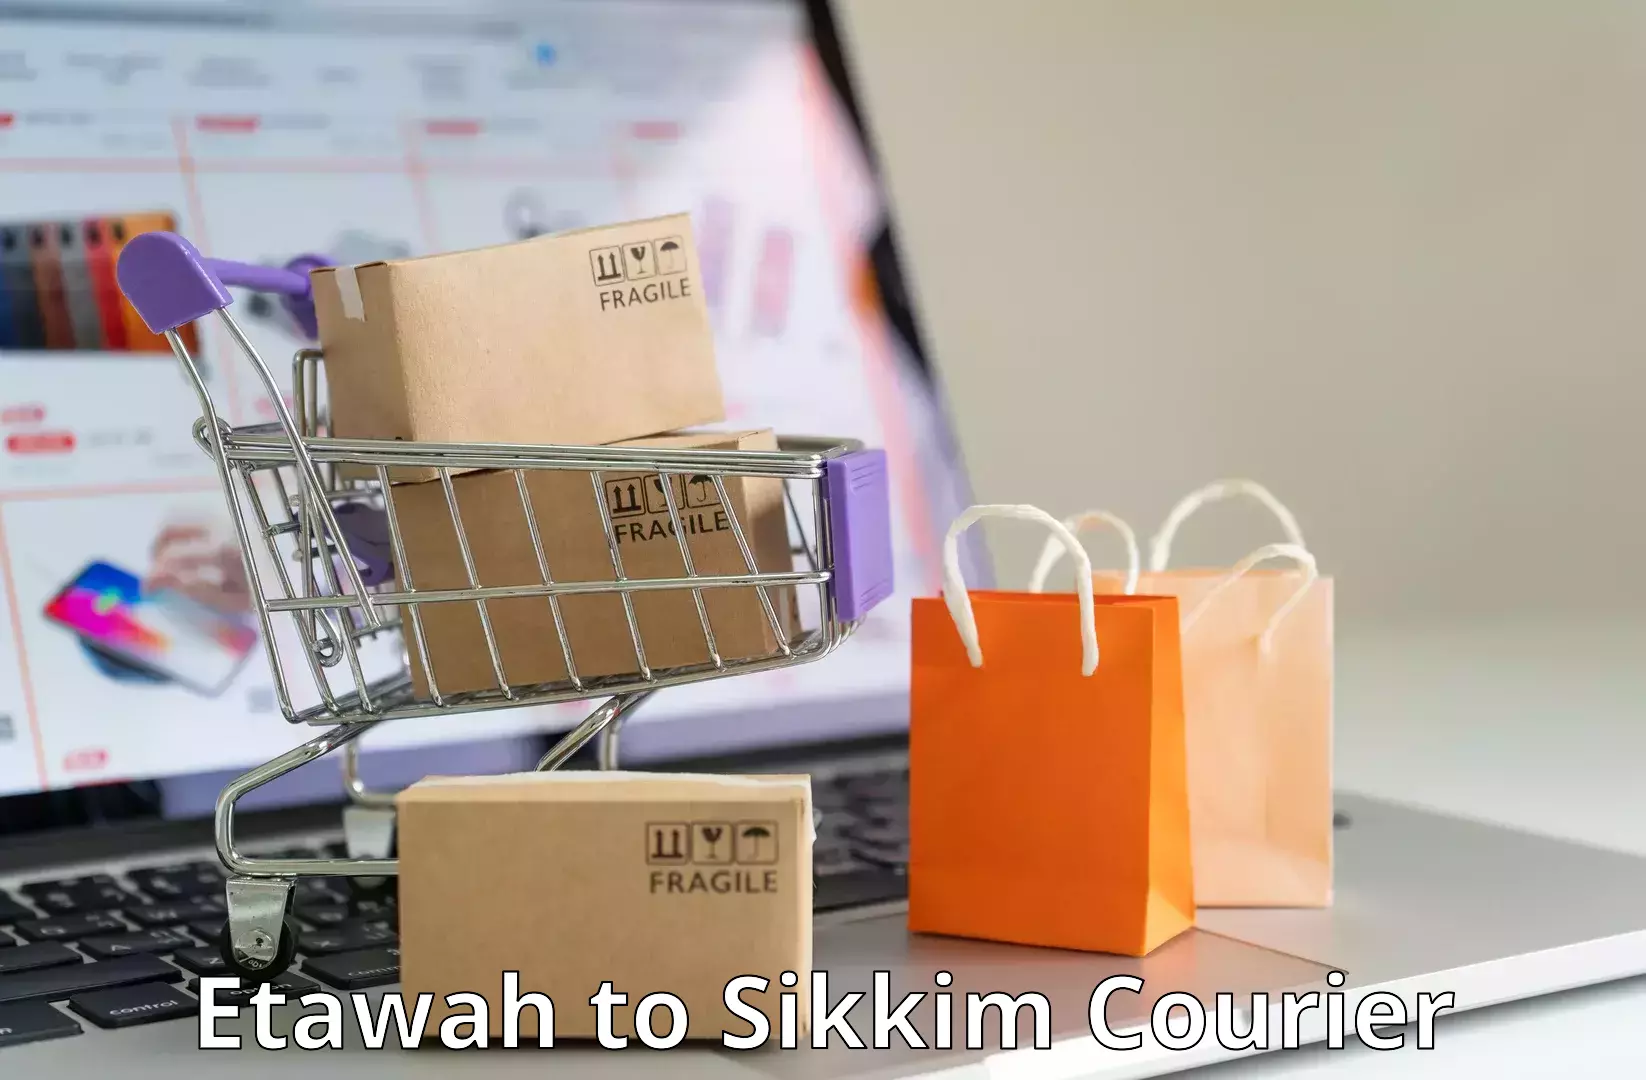 Cost-effective courier options Etawah to Ravangla